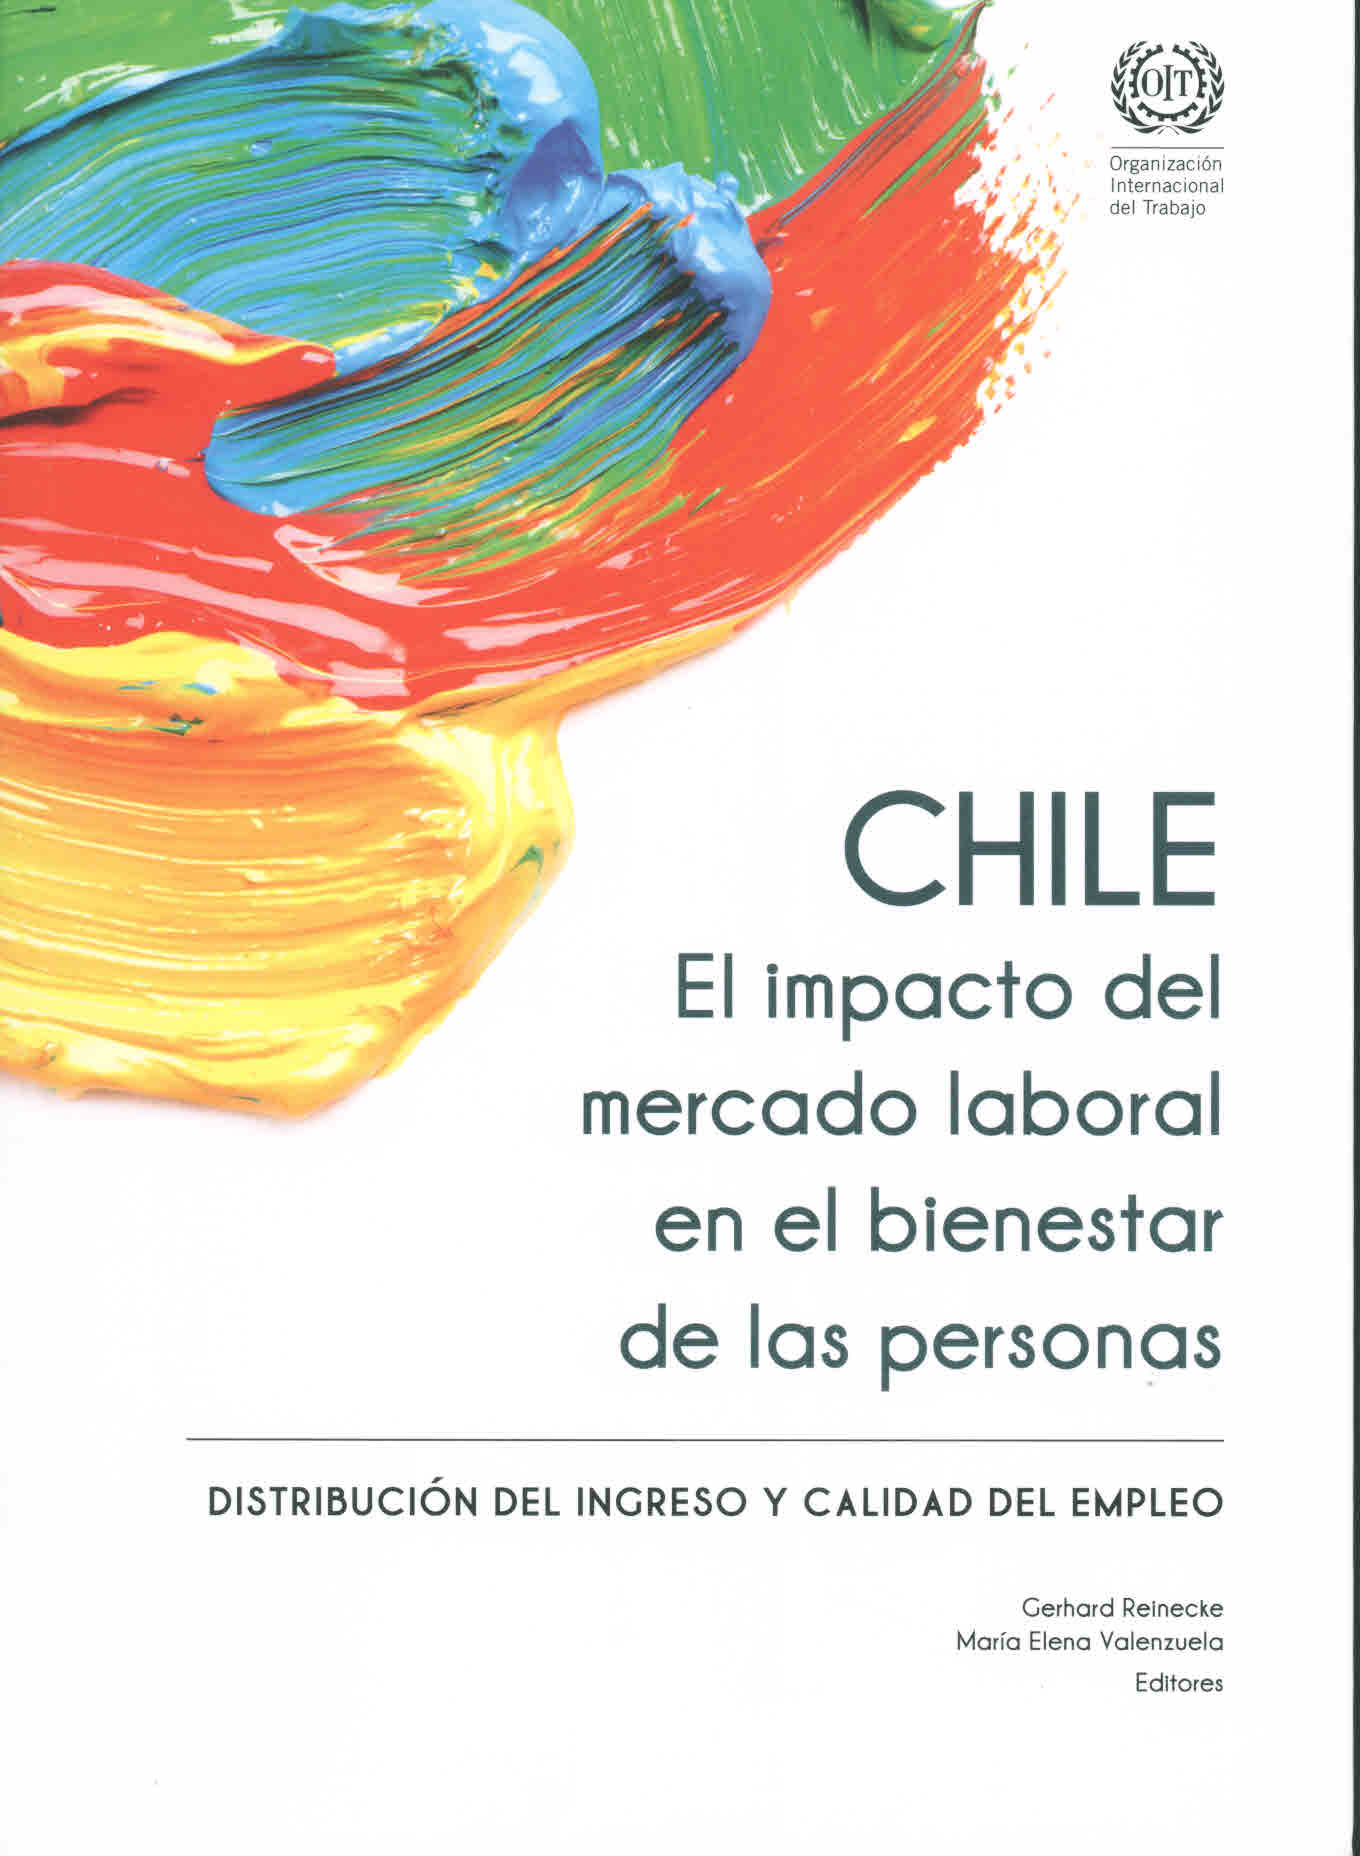 Chile. El impacto del mercado laboral en el bienestar de las personas. Distribución del ingreso y calidad del empleo